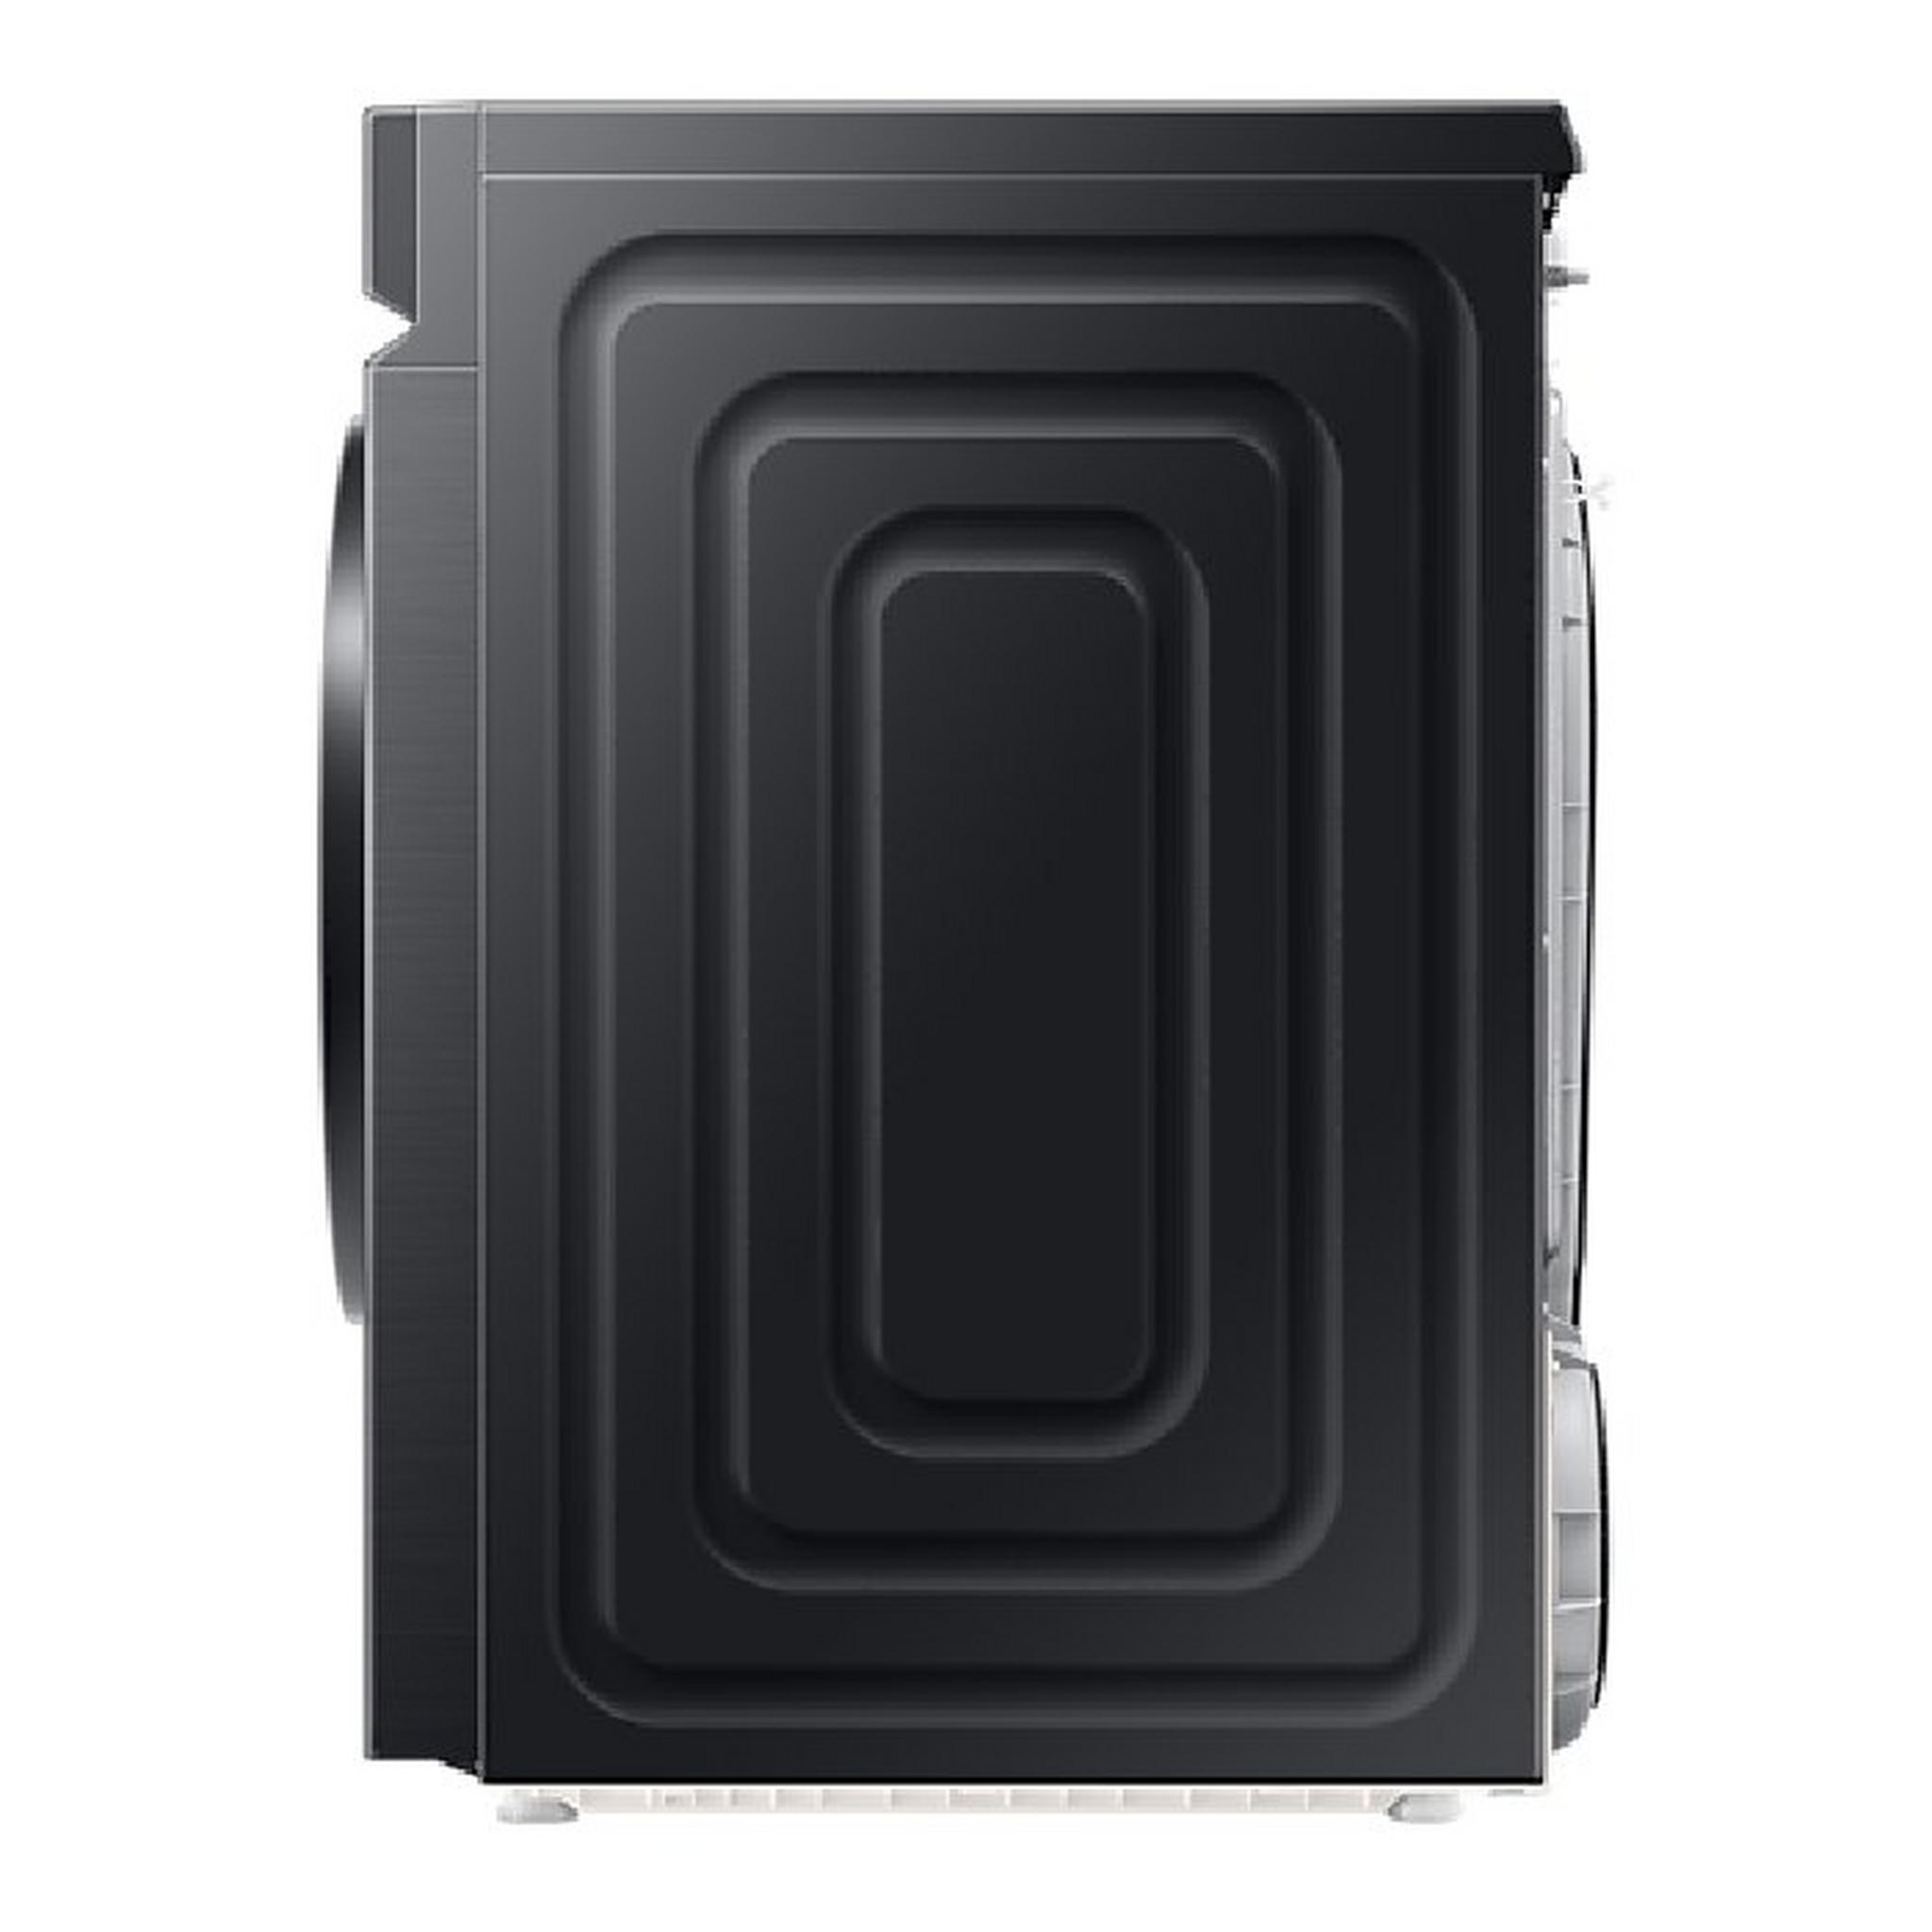 Samsung Heat Pump Condenser Dryer, 9kg, Front Load, DV90BB9445GBSG - Black